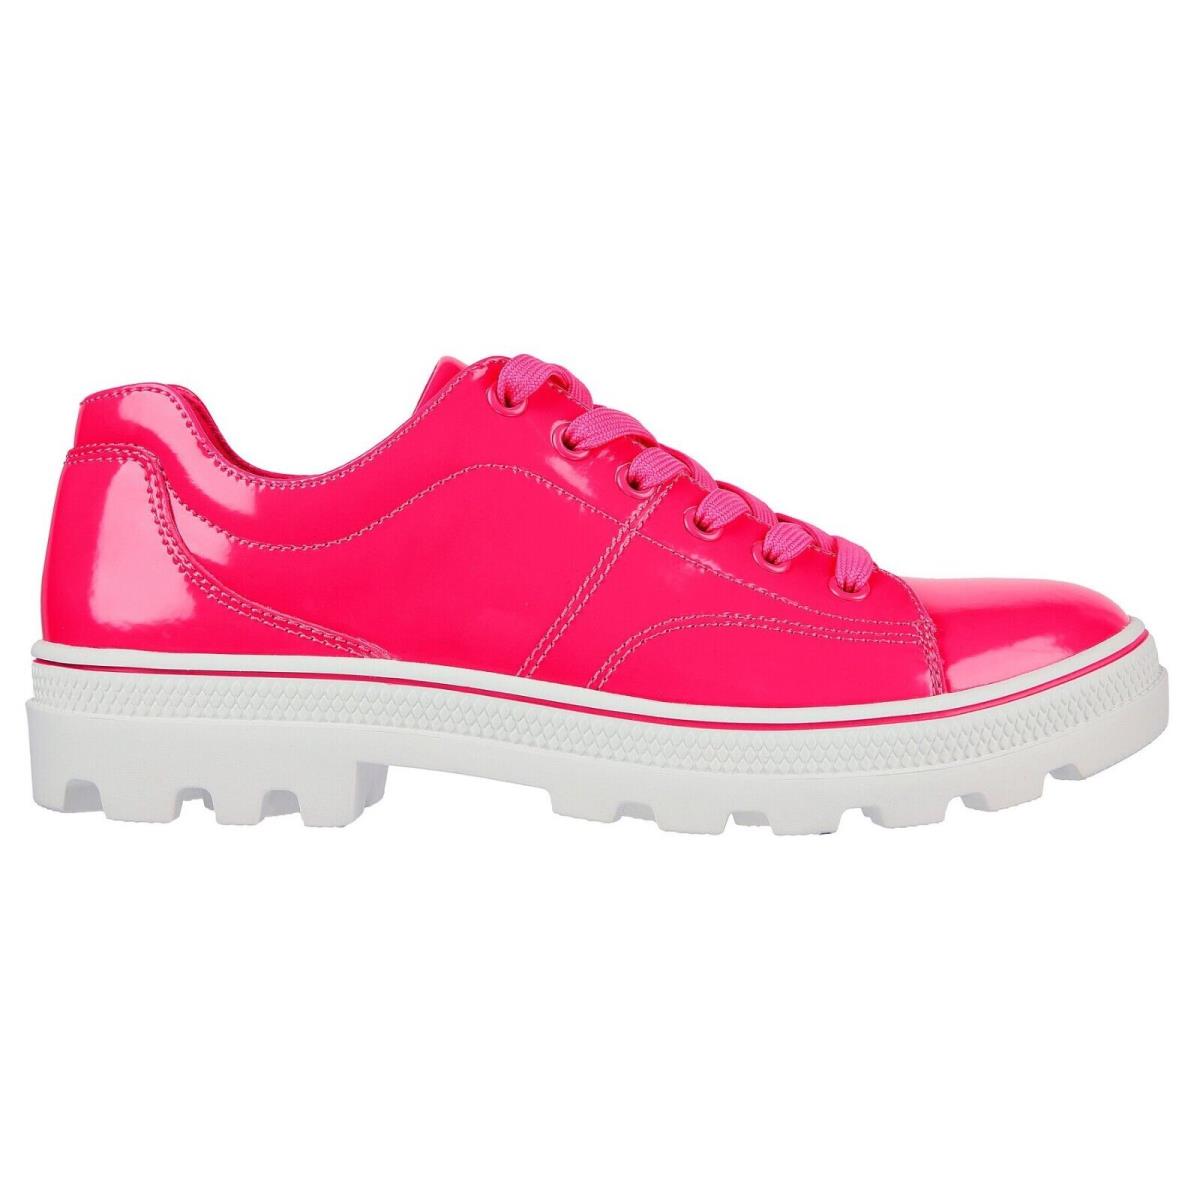 Skechers shoes Roadies - Hot Pink 10